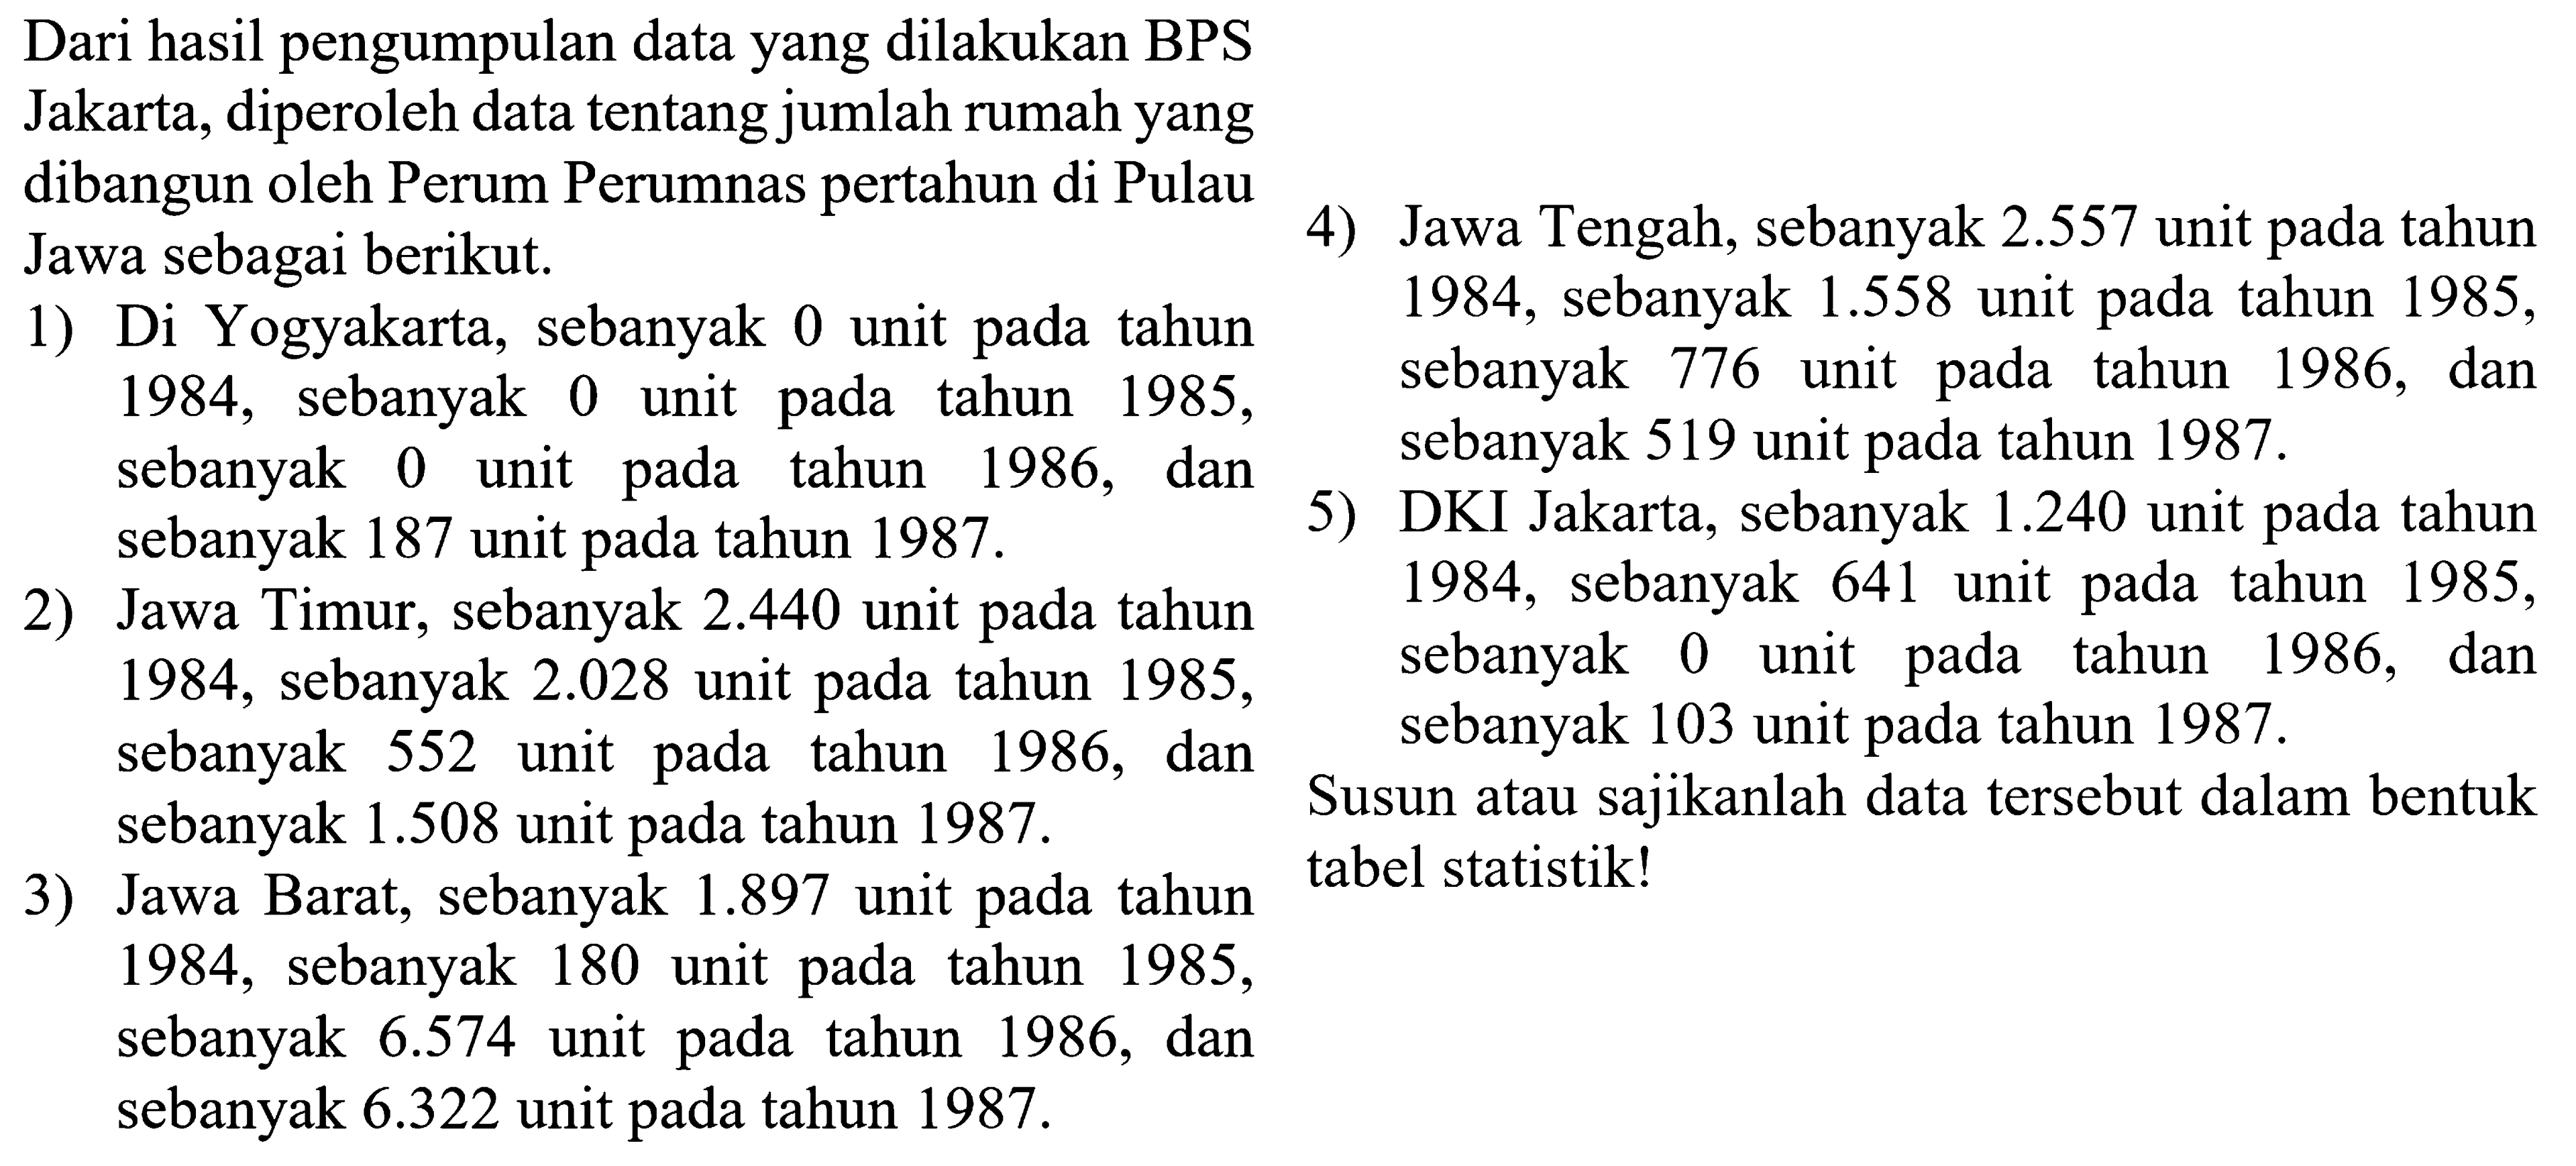 Dari hasil pengumpulan data yang dilakukan BPS Jakarta, diperoleh data tentang jumlah rumah yang dibangun oleh Perum Perumnas pertahun di Pulau Jawa sebagai berikut. 
1) Di Yogyakarta, sebanyak 0 unit pada tahun 1984, sebanyak 0 unit pada tahun 1985, sebanyak 0 unit pada tahun 1986, dan sebanyak 187 unit pada tahun 1987. 
2) Jawa Timur, sebanyak 2.440 unit pada tahun 1984, sebanyak 2.028 unit pada tahun 1985, sebanyak 552 unit pada tahun 1986, dan sebanyak 1.508 unit pada tahun 1987. 
3) Jawa Barat, sebanyak 1.897 unit pada tahun 1984, sebanyak 180 unit pada tahun 1985, sebanyak 6.574 unit pada tahun 1986, dan sebanyak 6.322 unit pada tahun 1987. 
4) Jawa Tengah, sebanyak 2.557 unit pada tahun 1984, sebanyak 1.558 unit pada tahun 1985, sebanyak 776 unit pada tahun 1986, dan sebanyak 519 unit pada tahun 1987. 
5) DKI Jakarta, sebanyak 1.240 unit pada tahun 1984, sebanyak 641 unit pada tahun 1985, sebanyak 0 unit pada tahun 1986, dan sebanyak 103 unit pada tahun 1987. 
Susun atau sajikanlah data tersebut dalam bentuk tabel statistik!